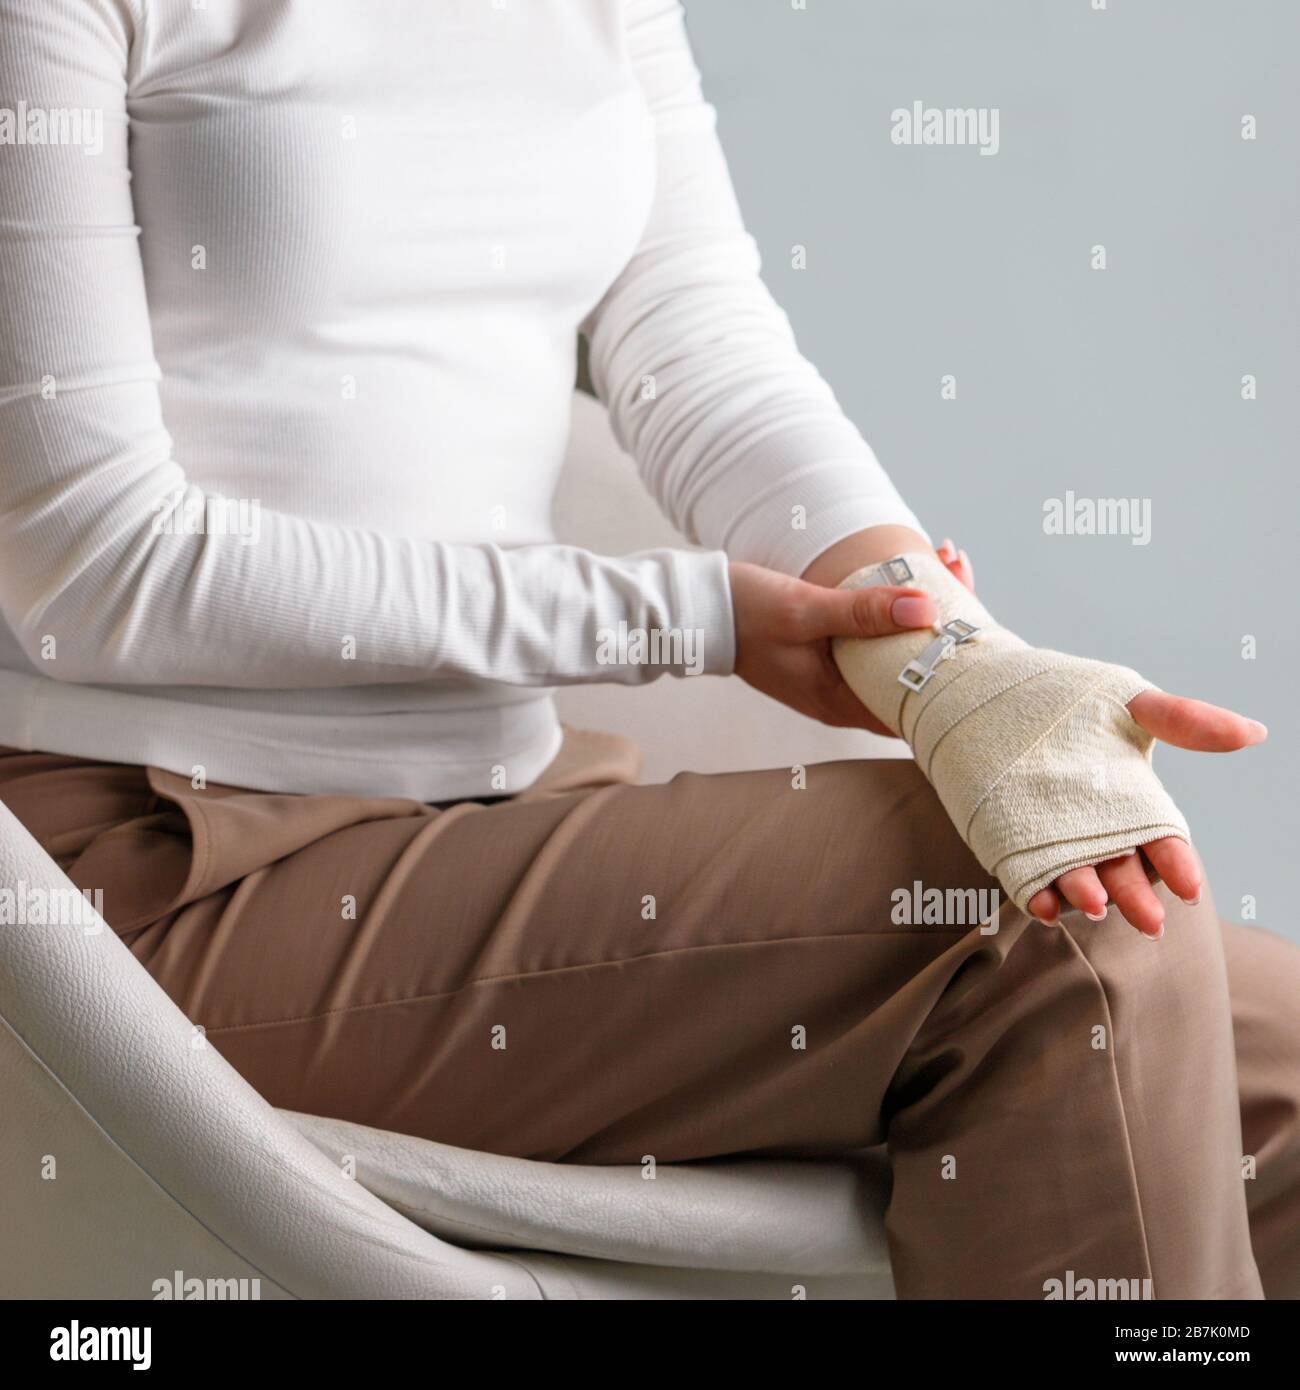 Frau, die ihr gewickeltes schmerzhaftes Handgelenk mit einem flexiblen elastischen, unterstützenden orthopädischen Verband berührt, nachdem sie Sport oder Verletzung nicht erfolgreich war, Nahaufnahme. Carpal tun Stockfoto